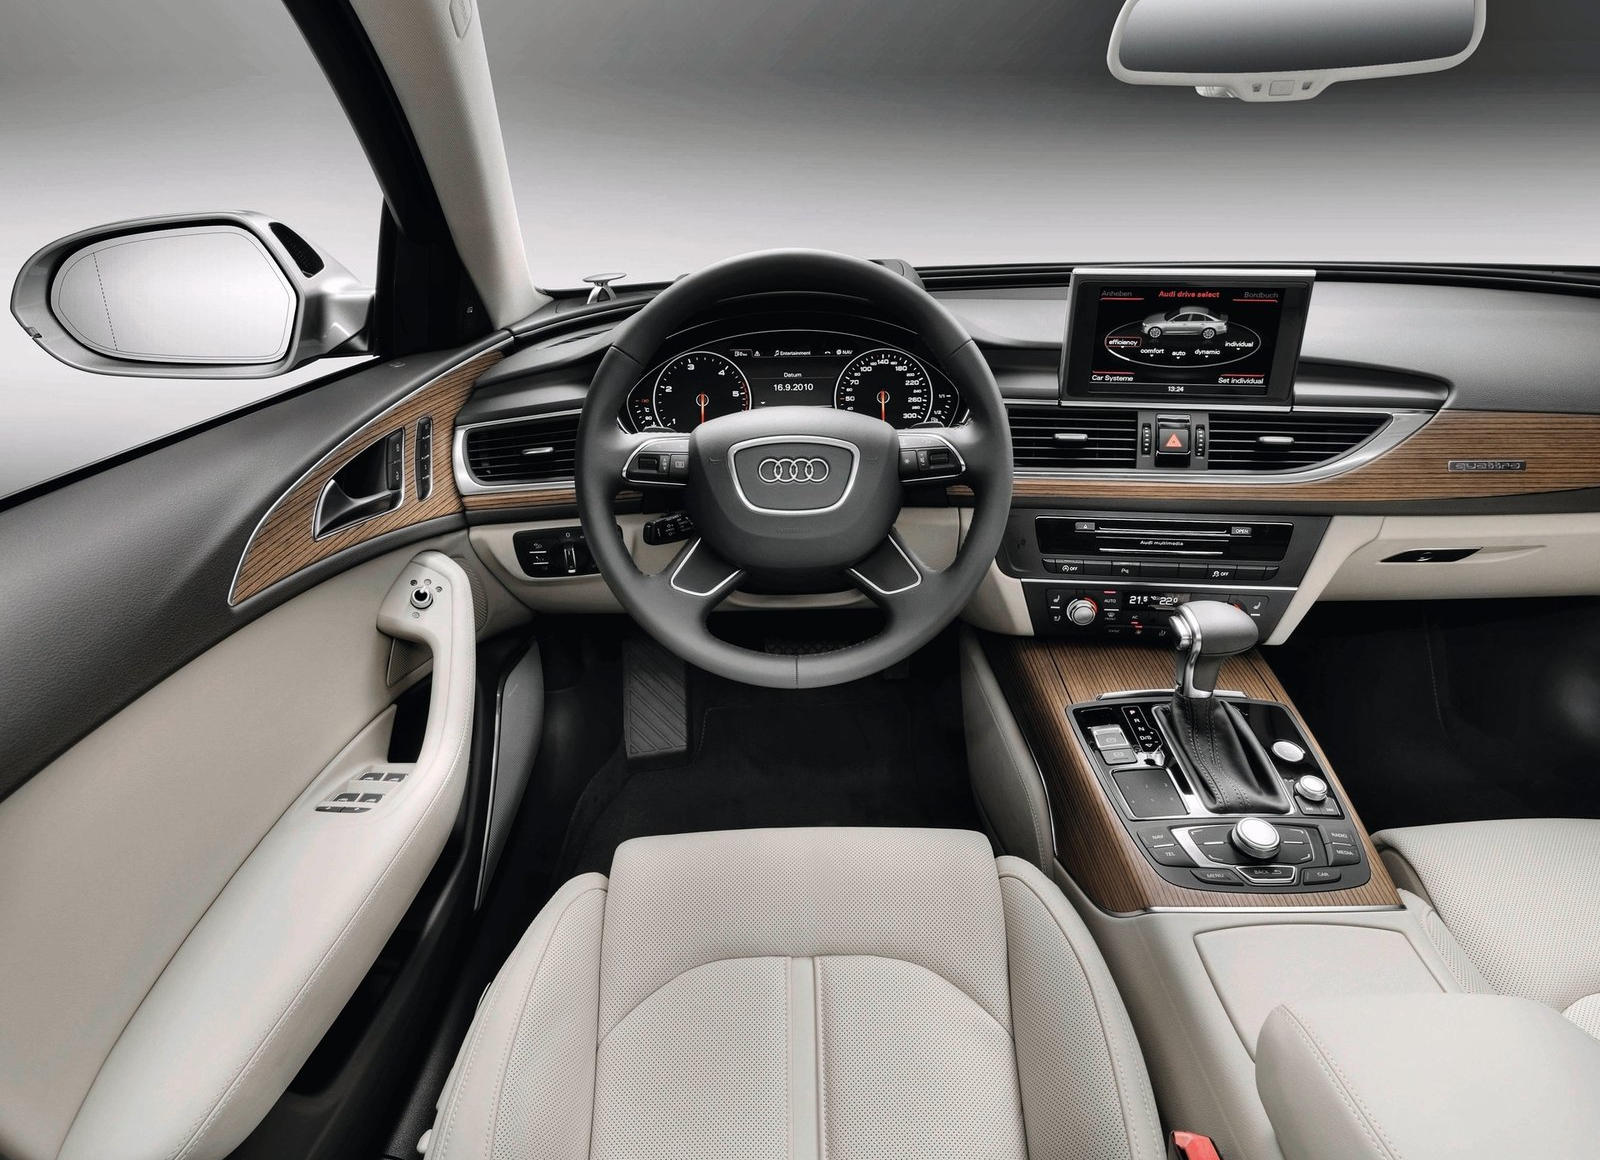 2015 Audi A6 Interior Photos | CarBuzz